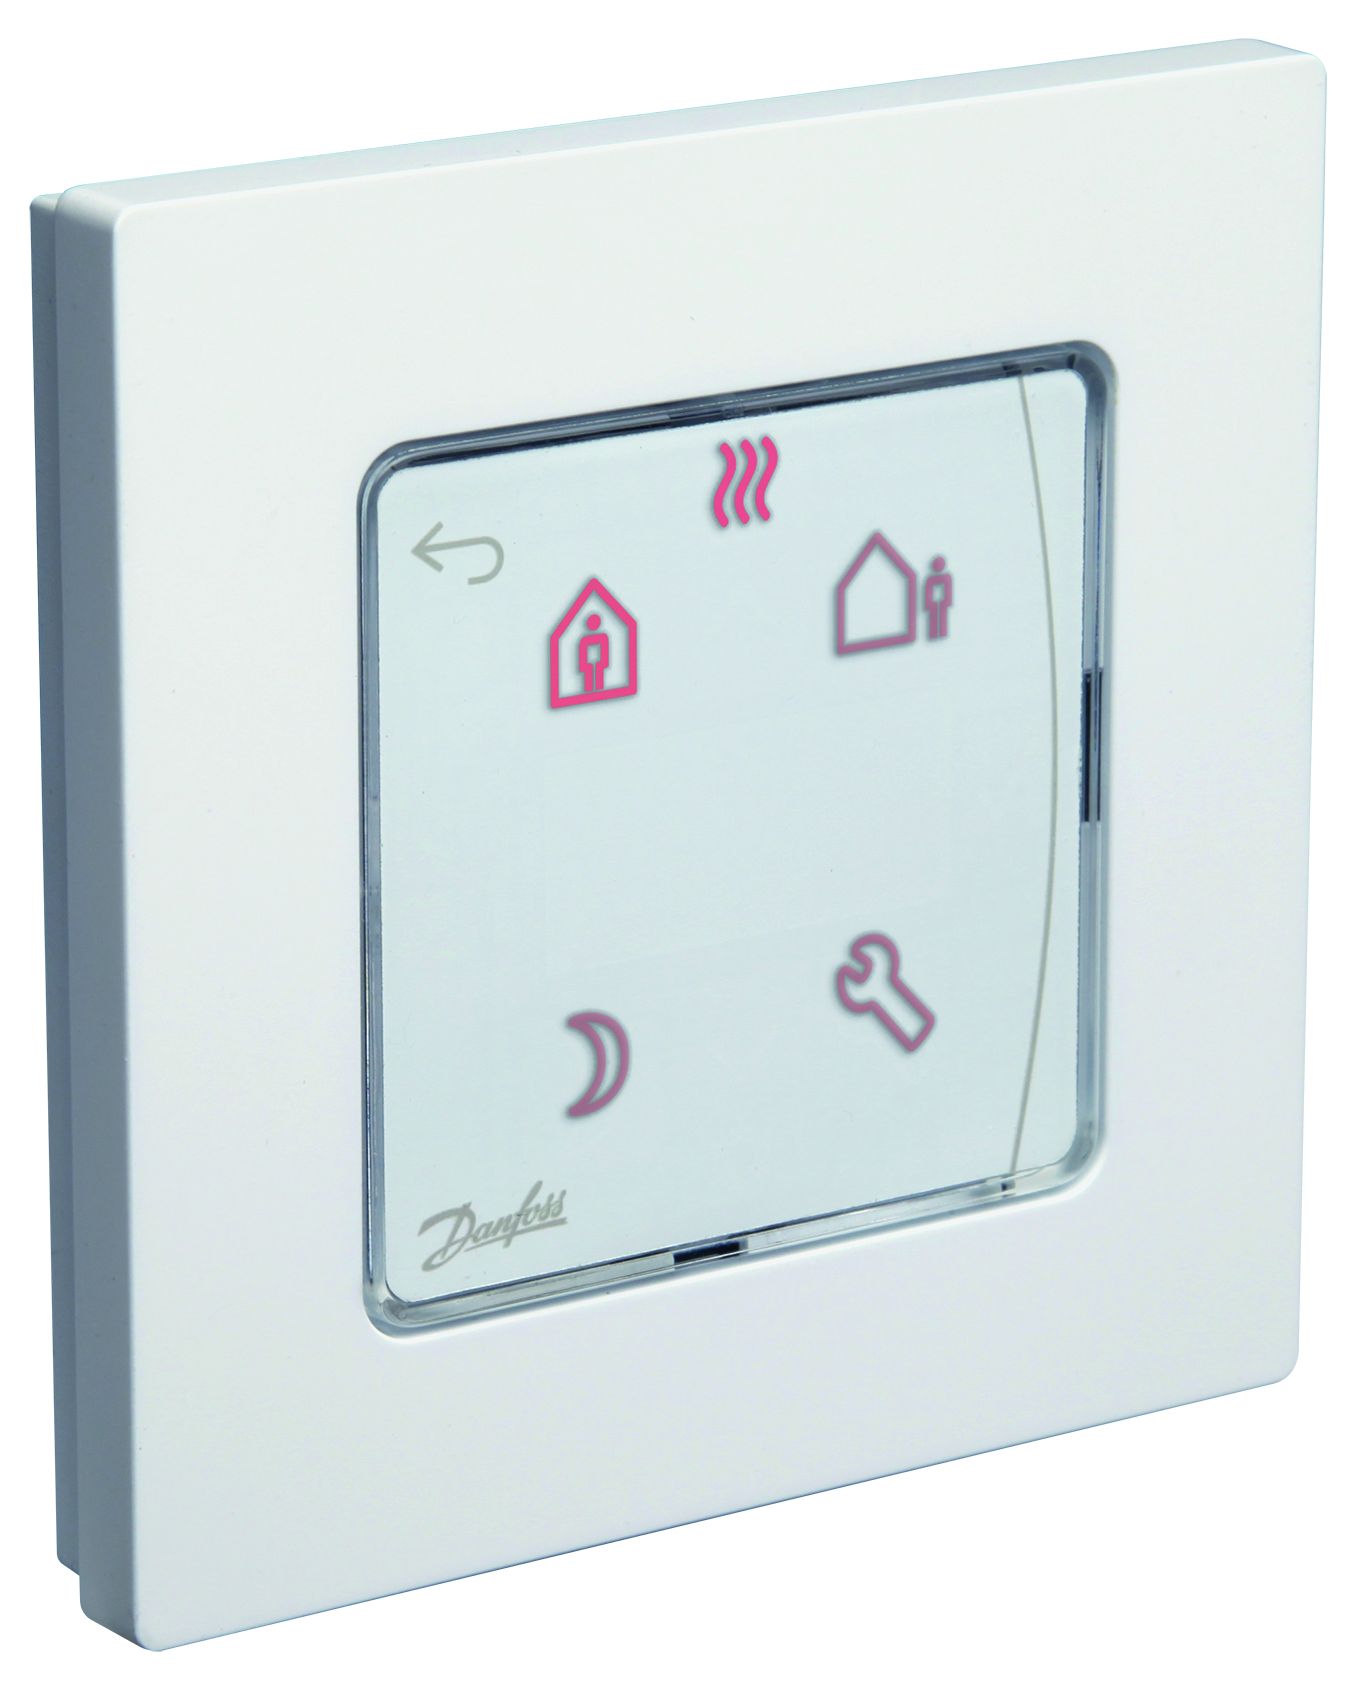 Programovatelný termostat Danfoss Programmable 230 V do podomítkové krabice (088U1020)